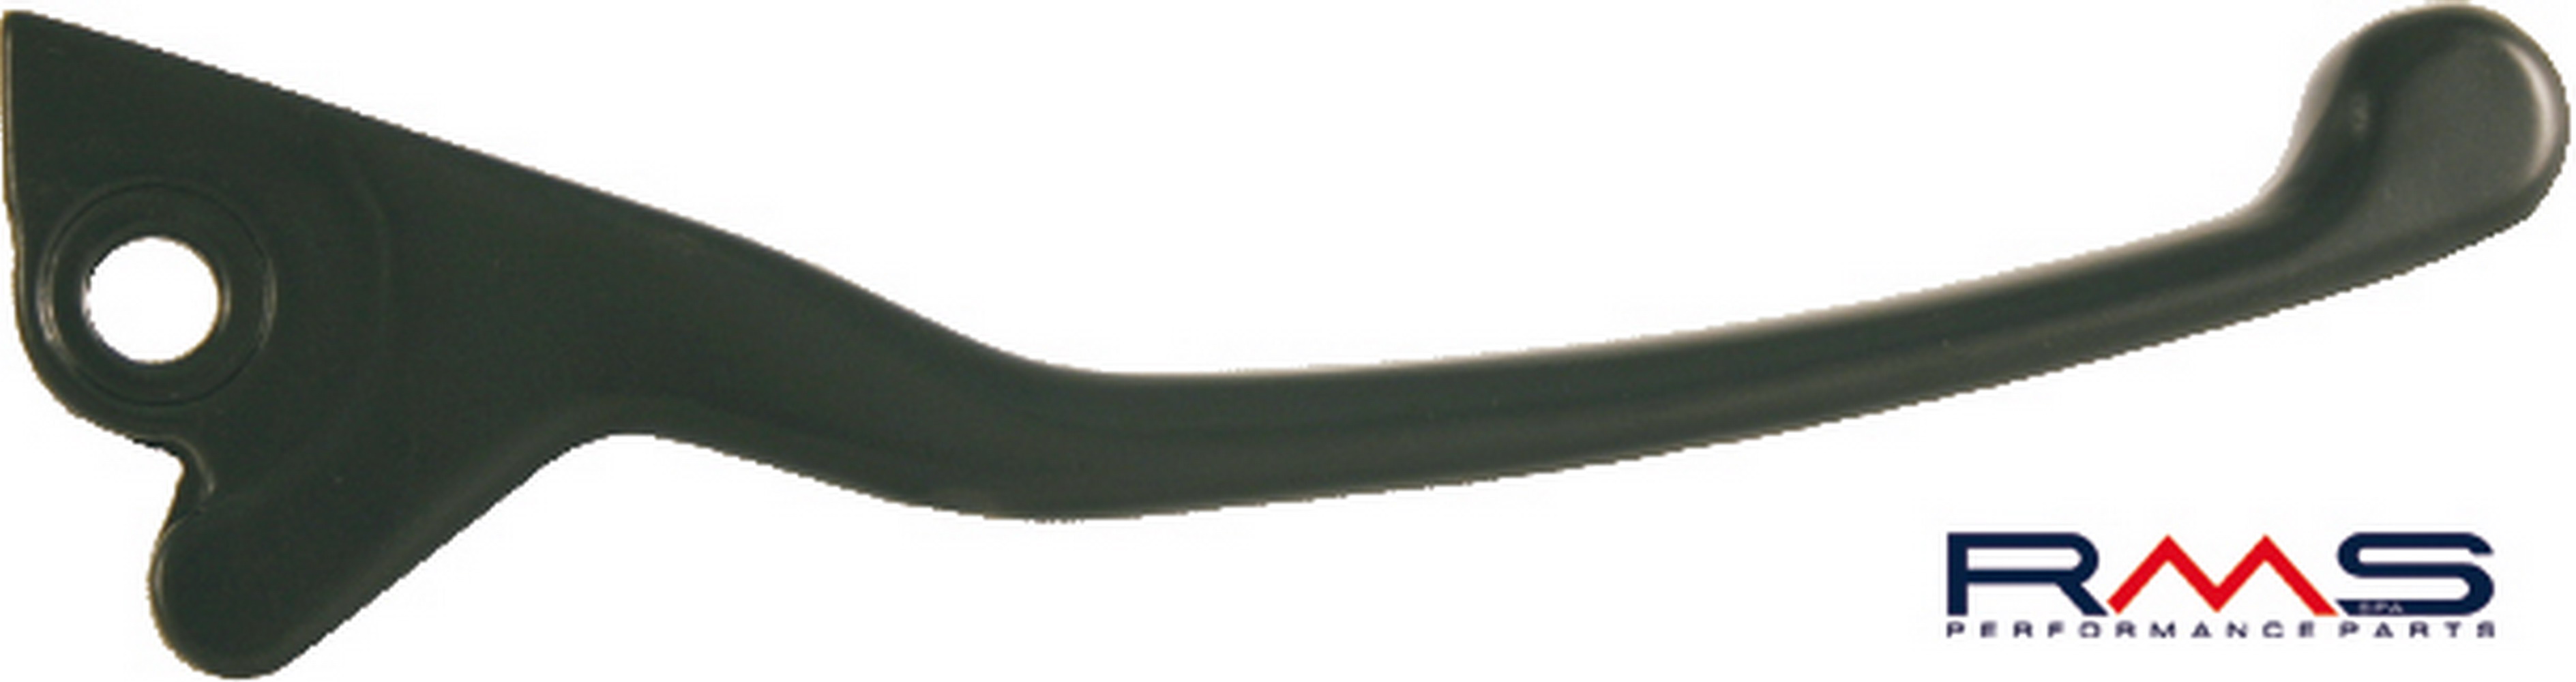 Obrázek produktu Páčka RMS 184120111 pravý černý